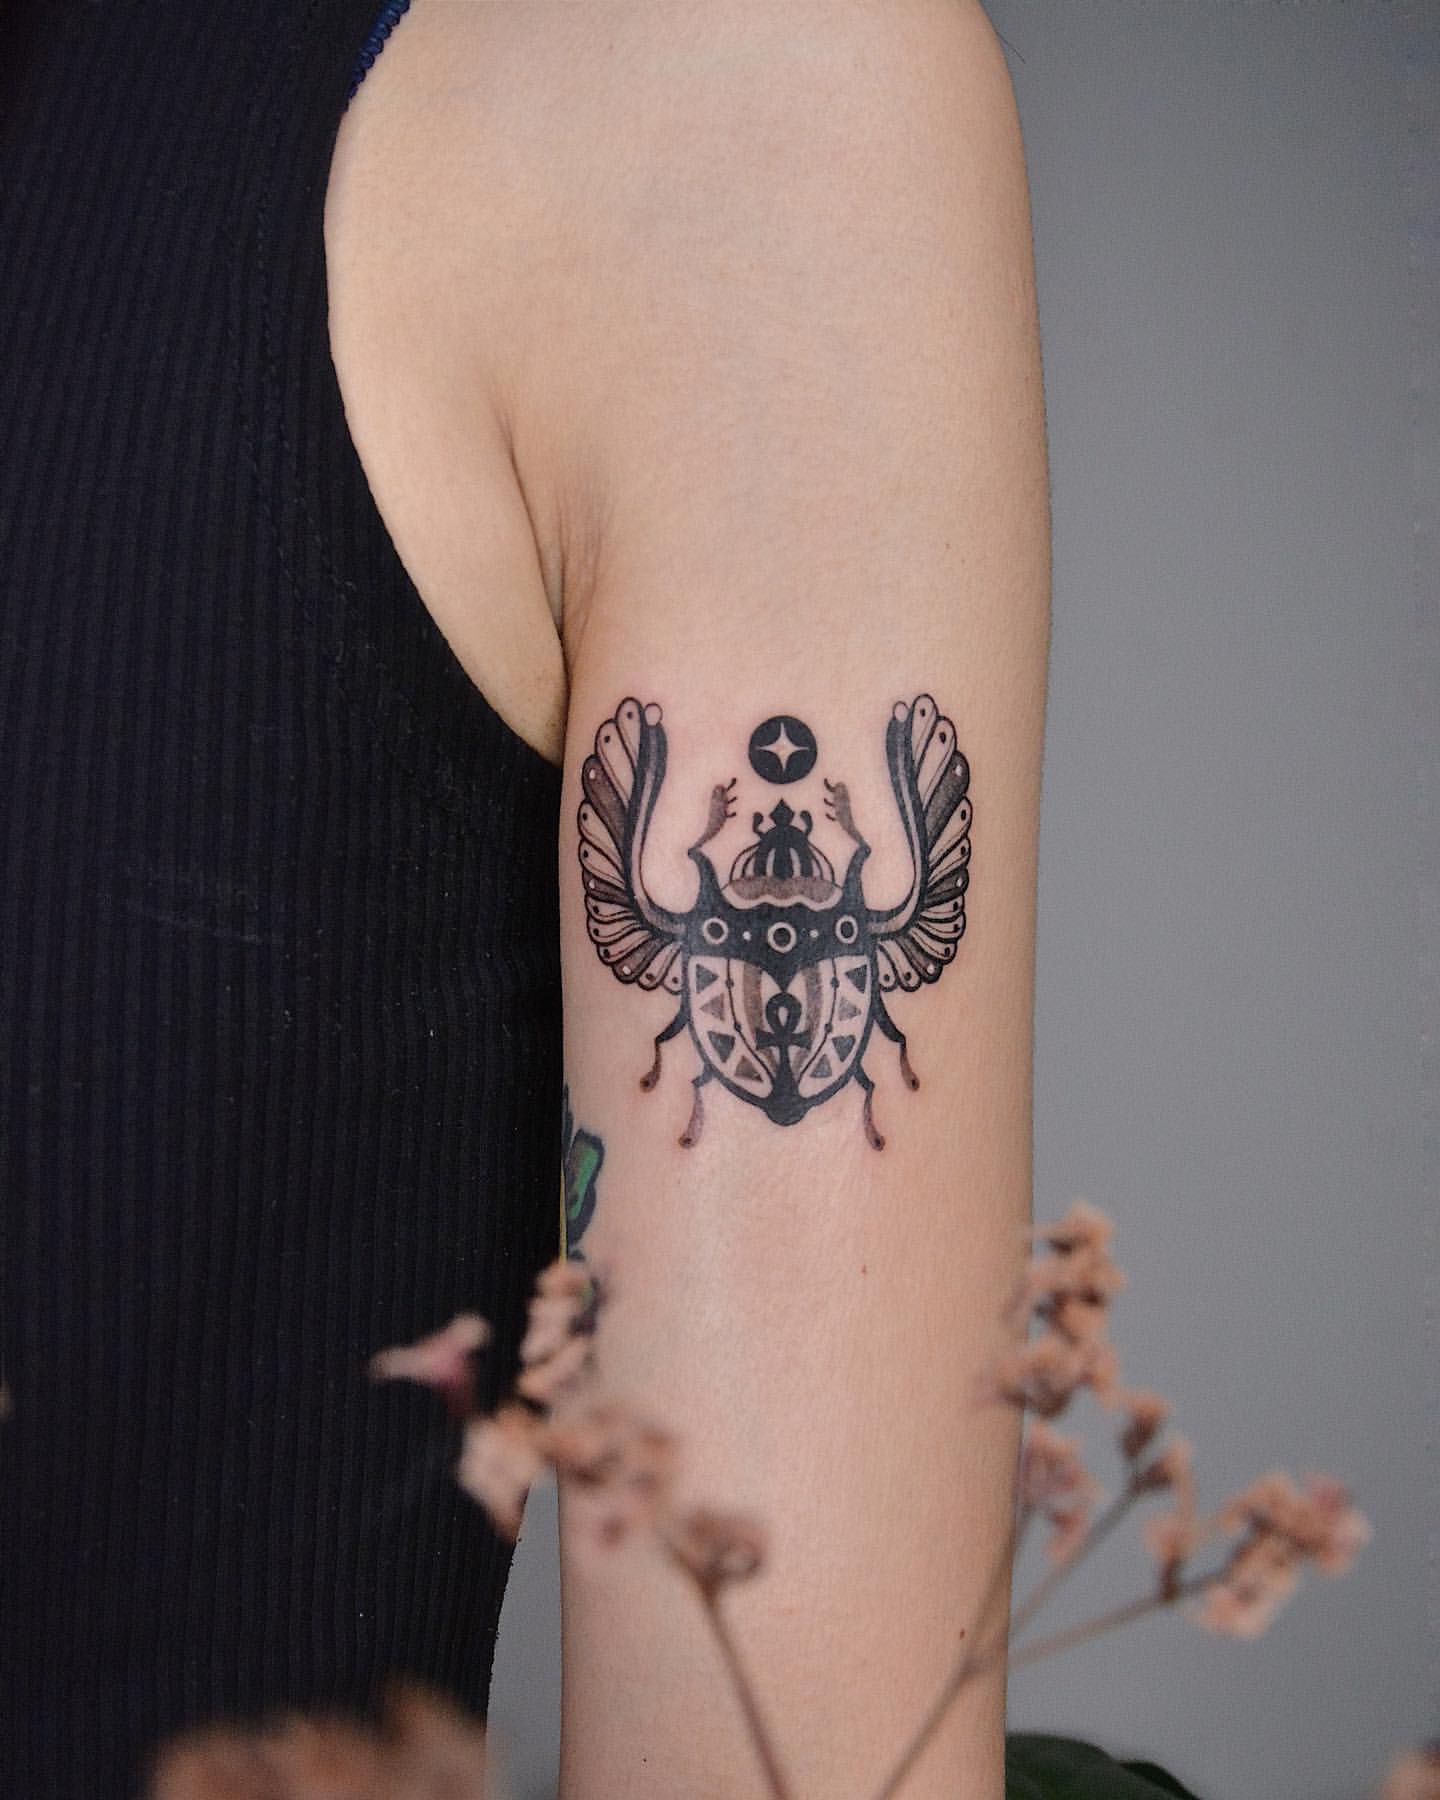 Scarab/Beetle Tattoo Ideas 23